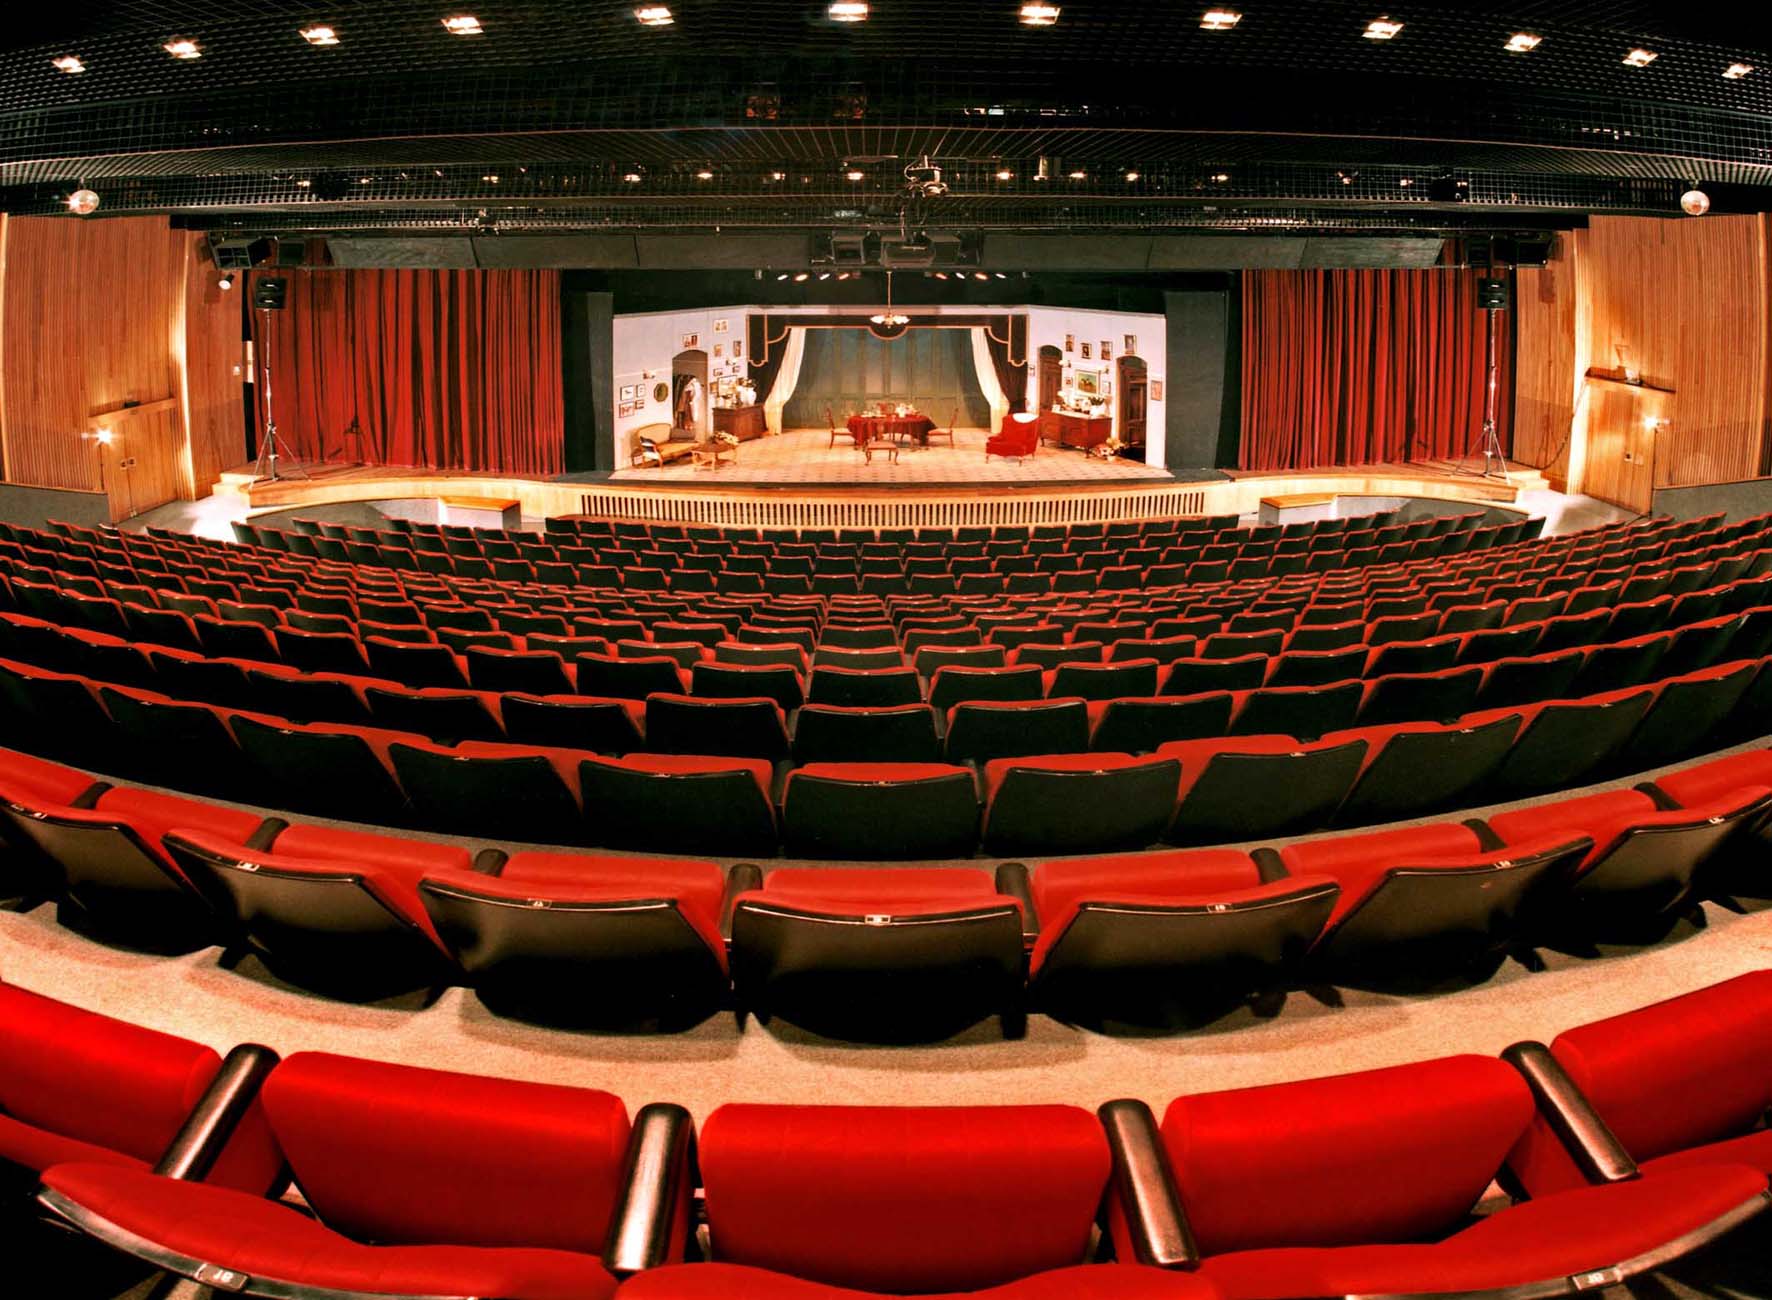 The Klatchkin Auditorium. Photo: Leonid Padrul